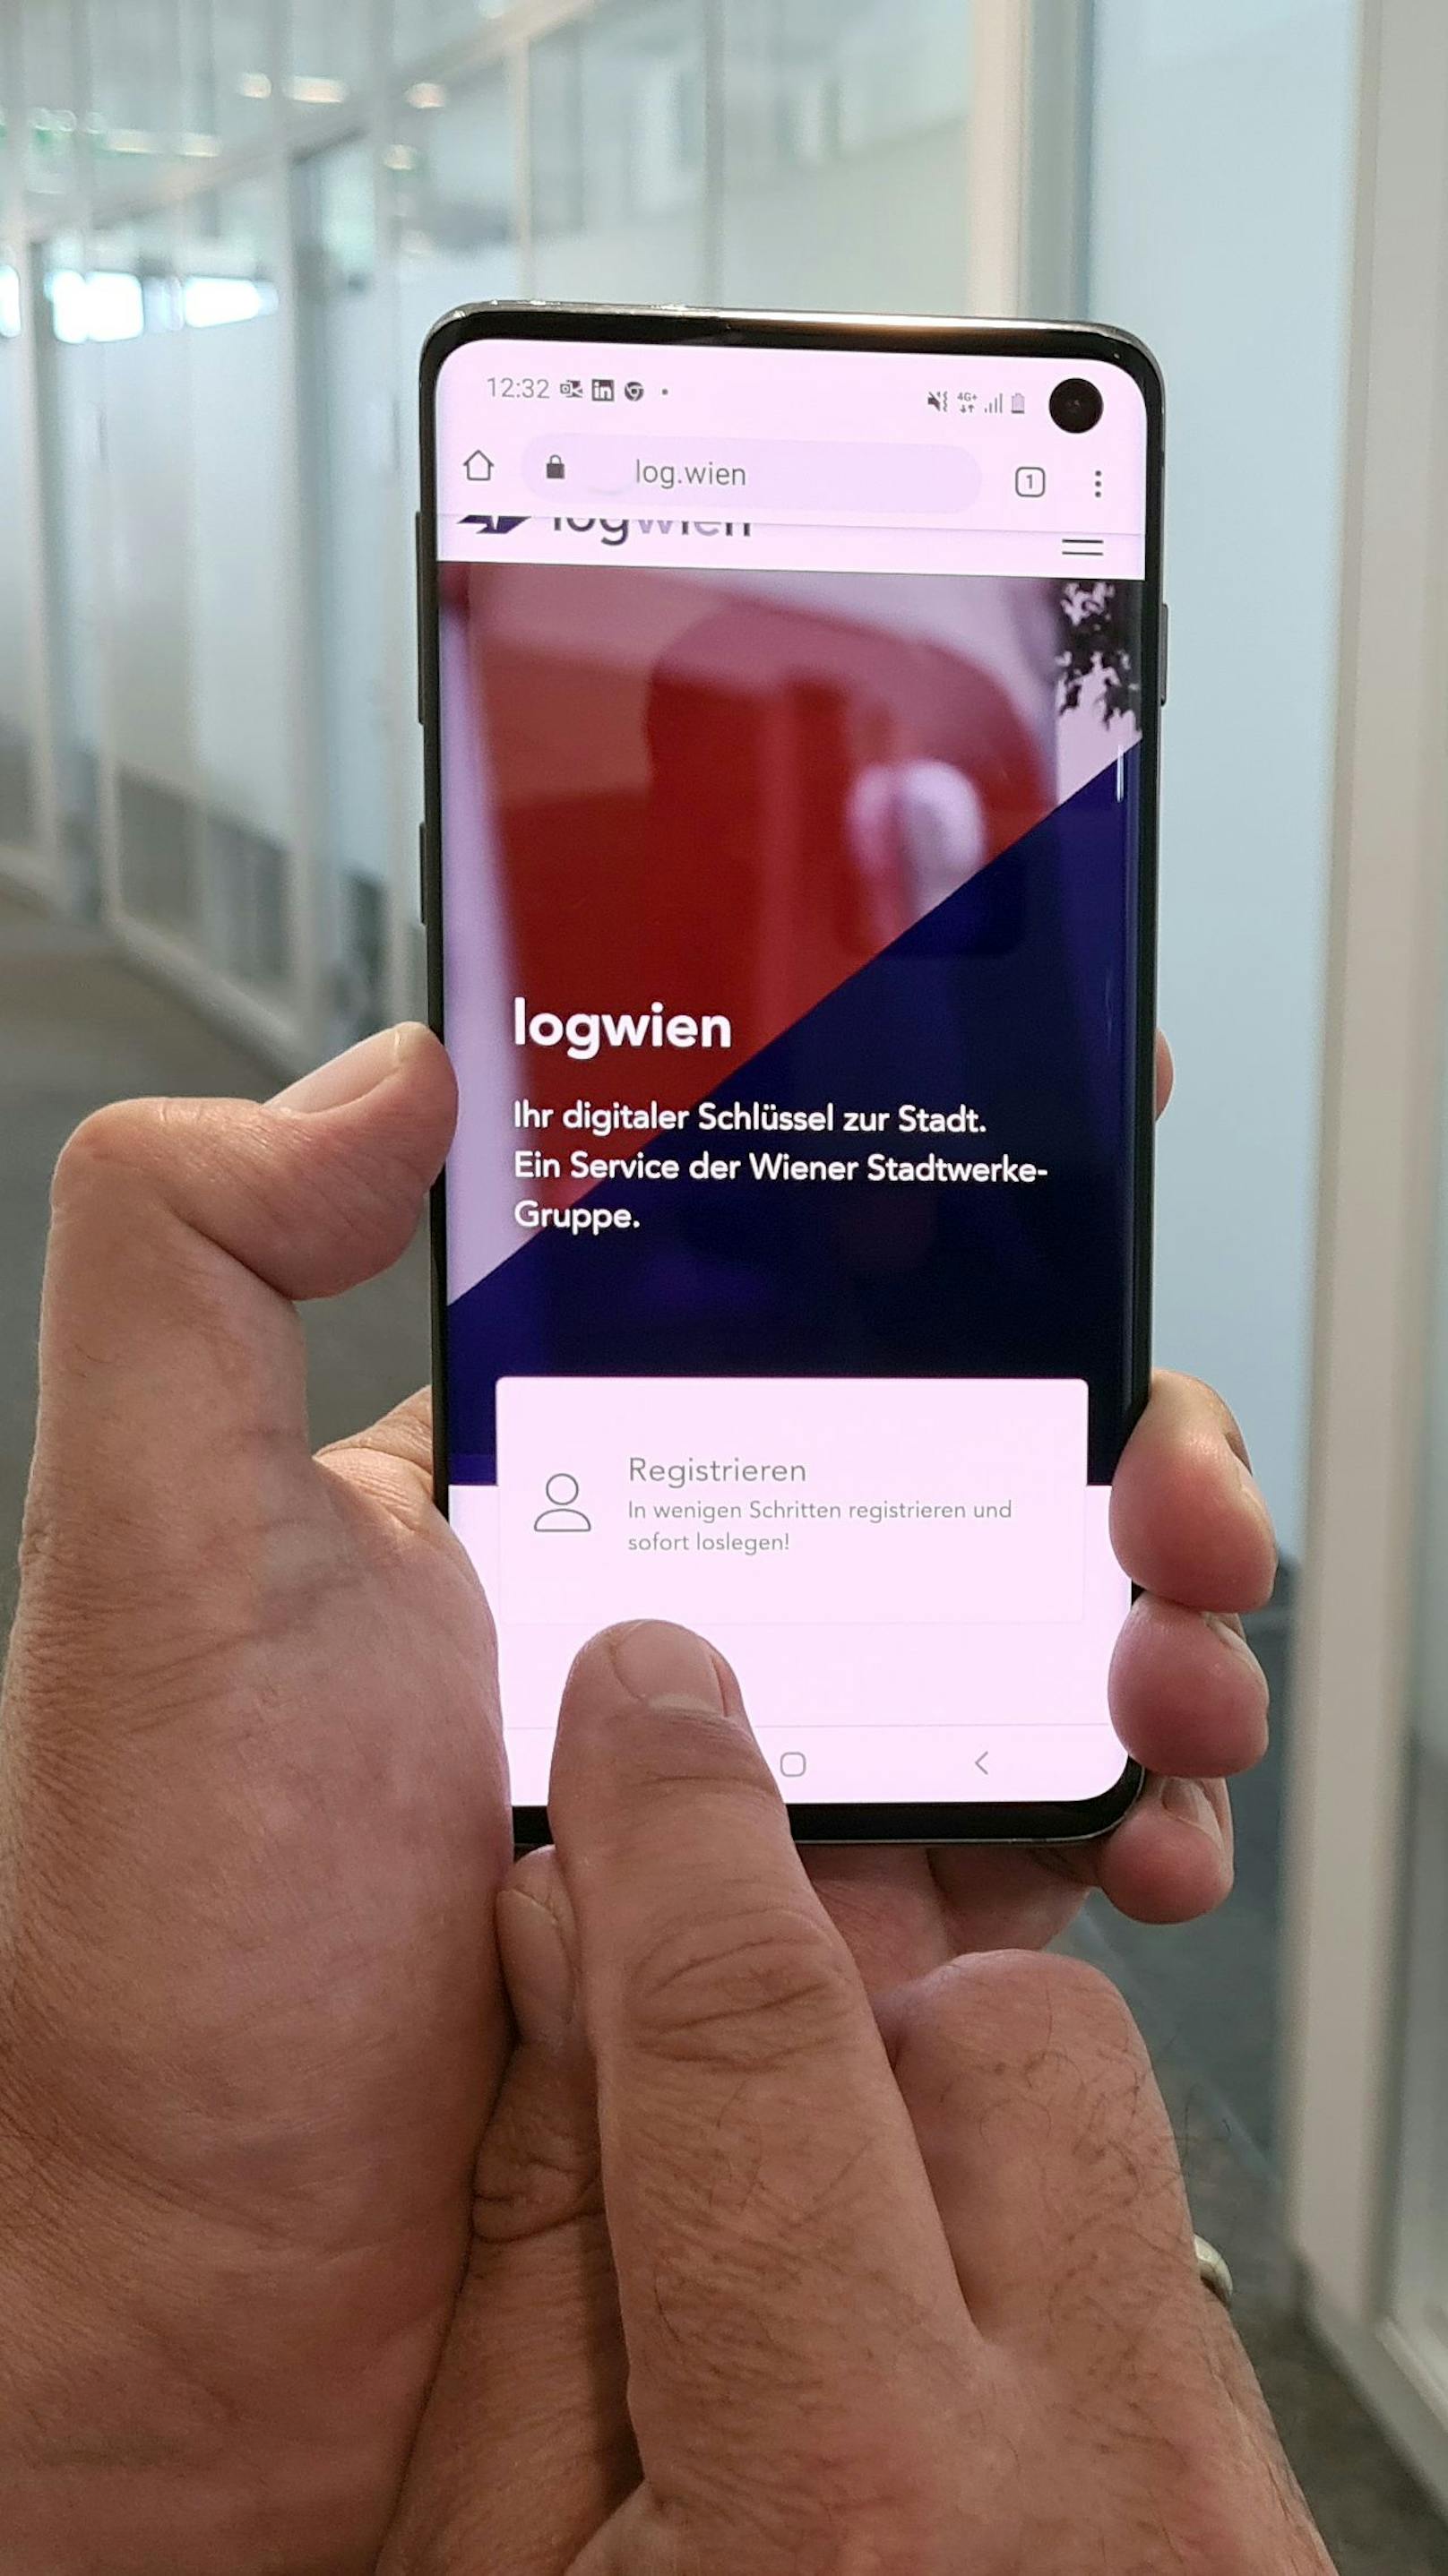 Mit dem neuen digitalen Schlüssel "logwien" bieten die Wiener Stadtwerke nun Zugang zu all ihren Leistungen.